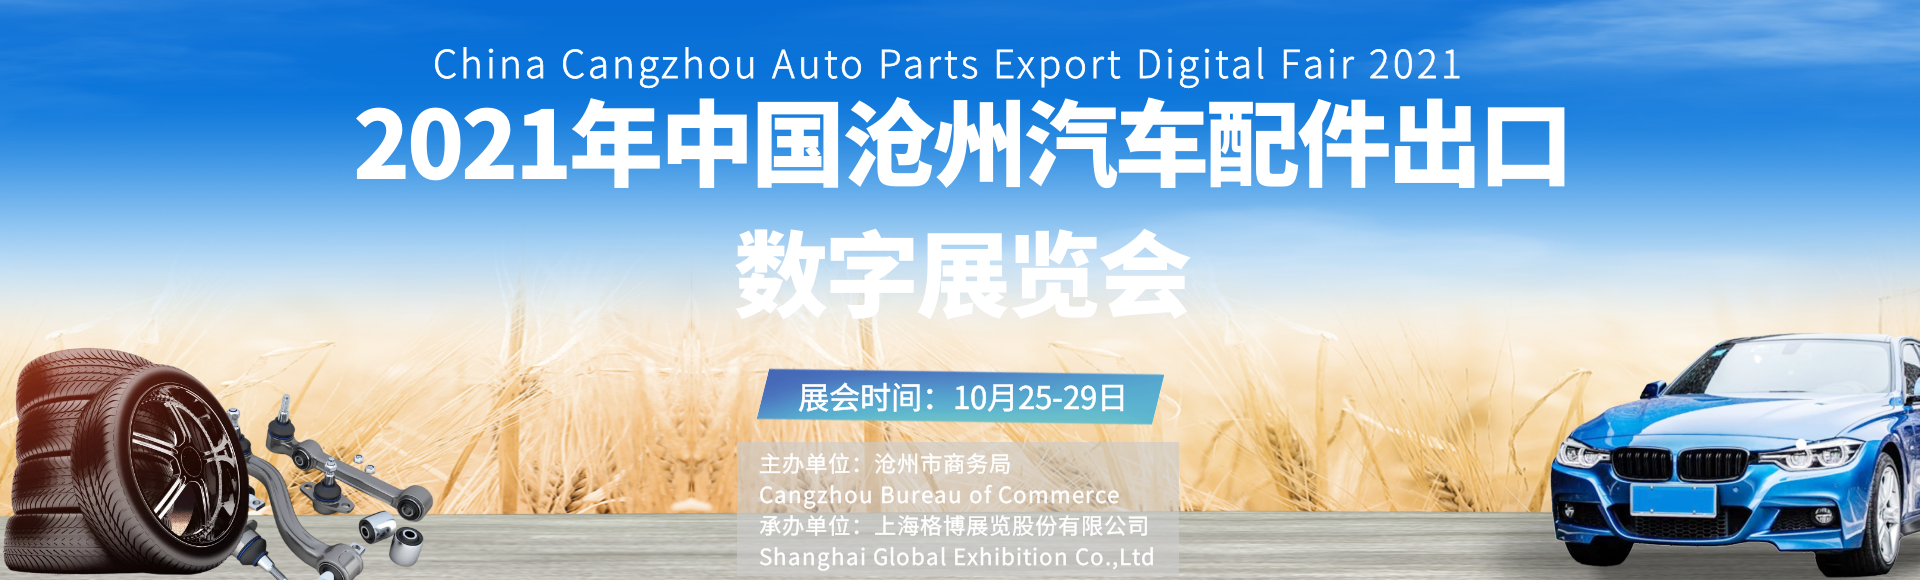 2021年中国沧州汽车配件出口数字<font color=#ff0000>展览</font>会即将启幕